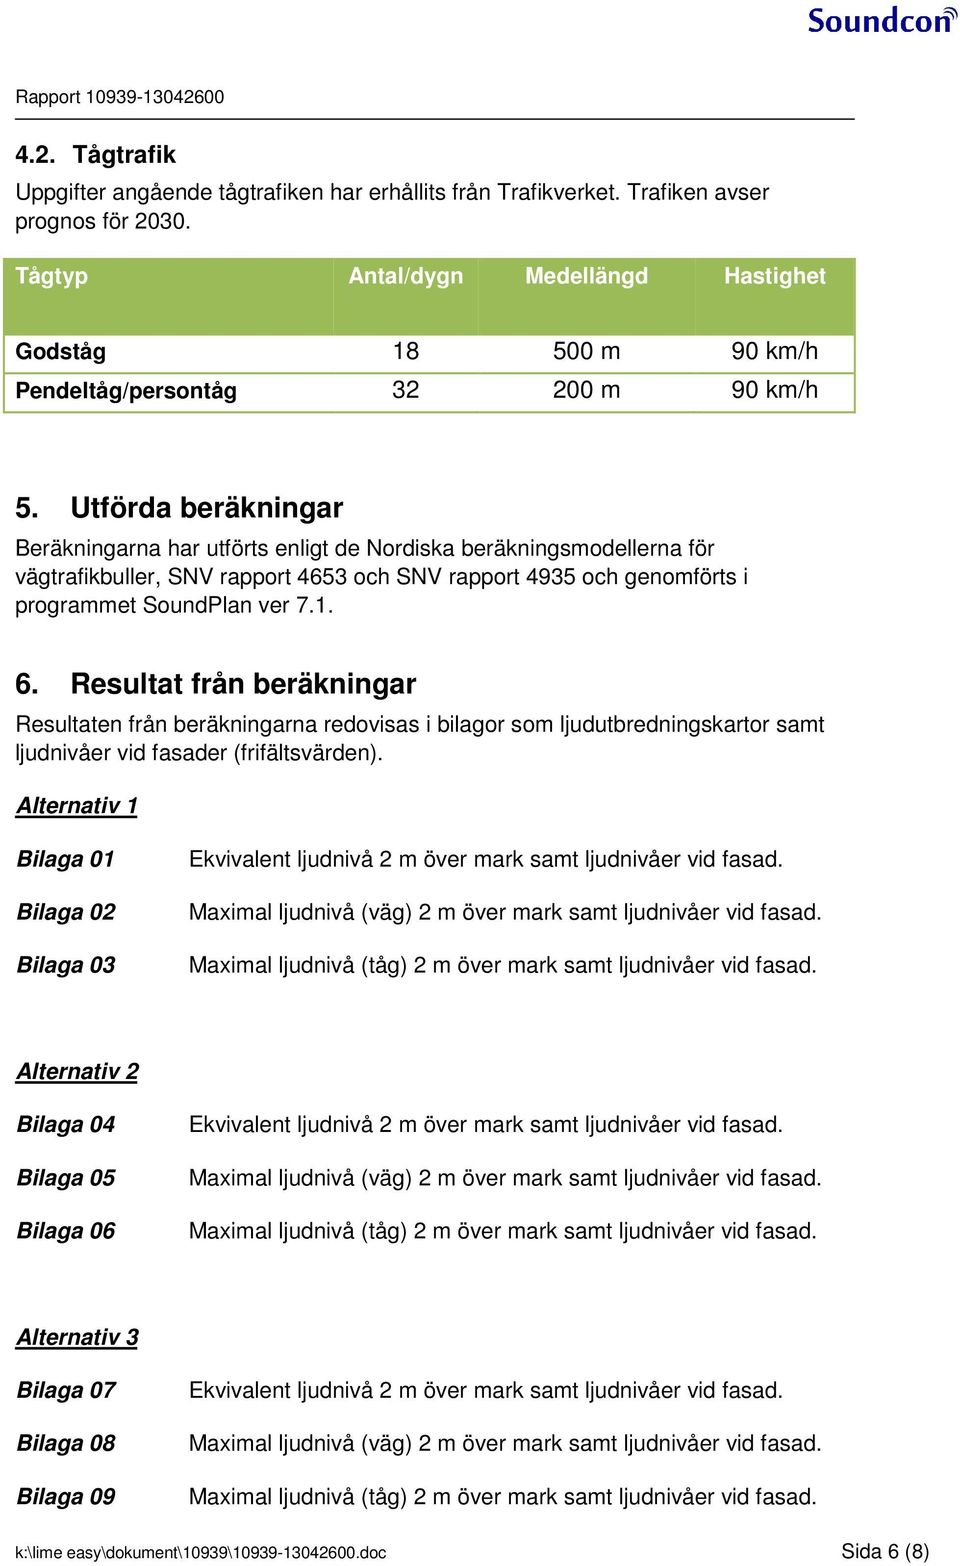 Utförda beräkningar Beräkningarna har utförts enligt de Nordiska beräkningsodellerna för vägtrafikbuller, SNV rapport och SNV rapport och genoförts i prograet SoundPlan ver.